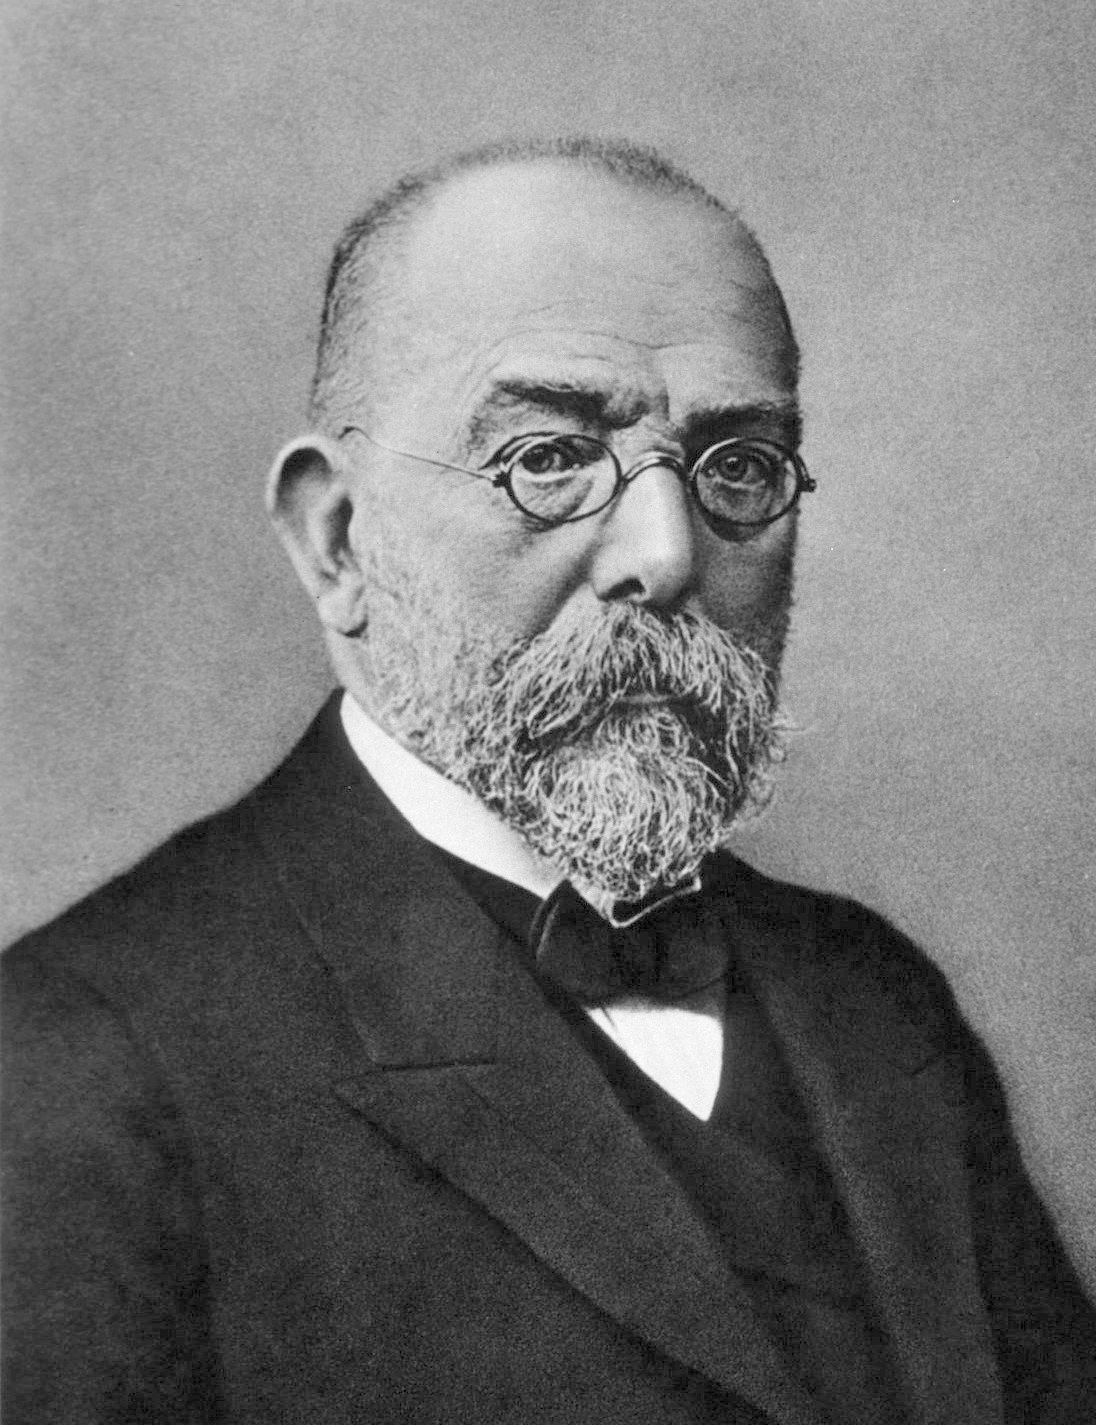 Foto antiga e em preto e branco do patologista alemão Robert Koch. Ele está de perfil, tem cabelos curtos, barba e bigode, usa óculos de grau com hastes arredondadas e veste roupa social.